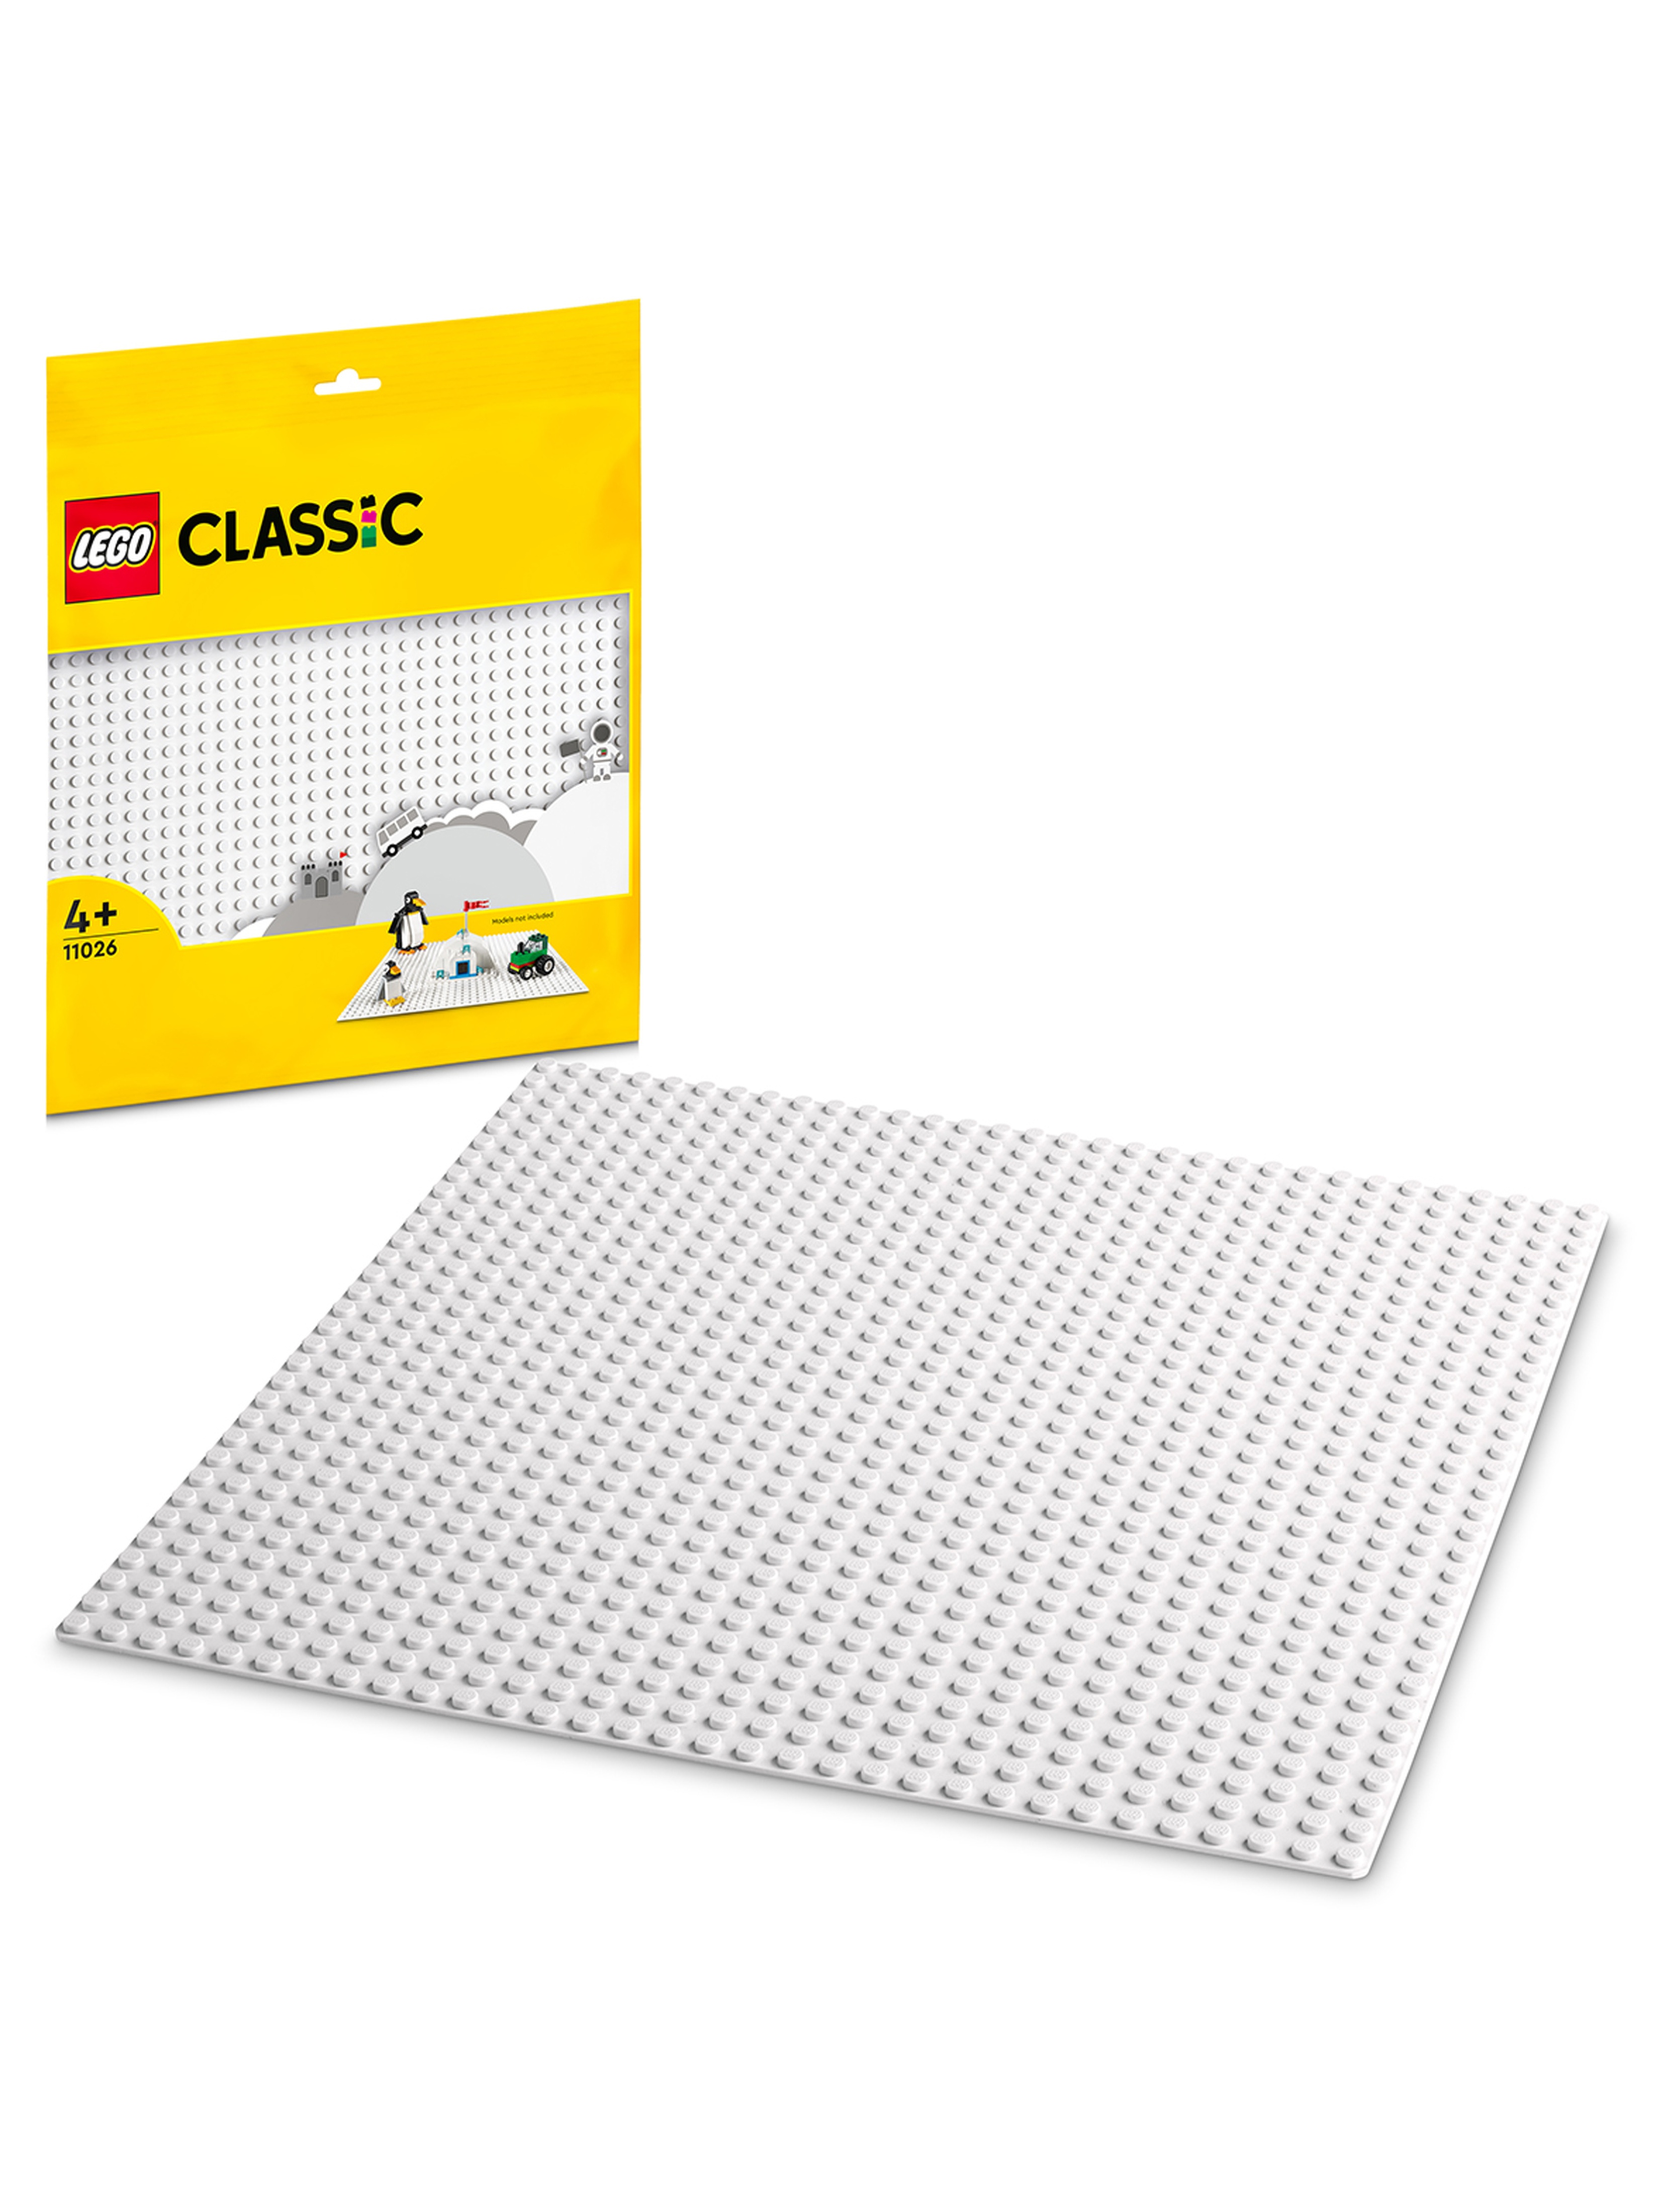 LEGO Classic - Biała płytka konstrukcyjna 11026 - wiek 4+